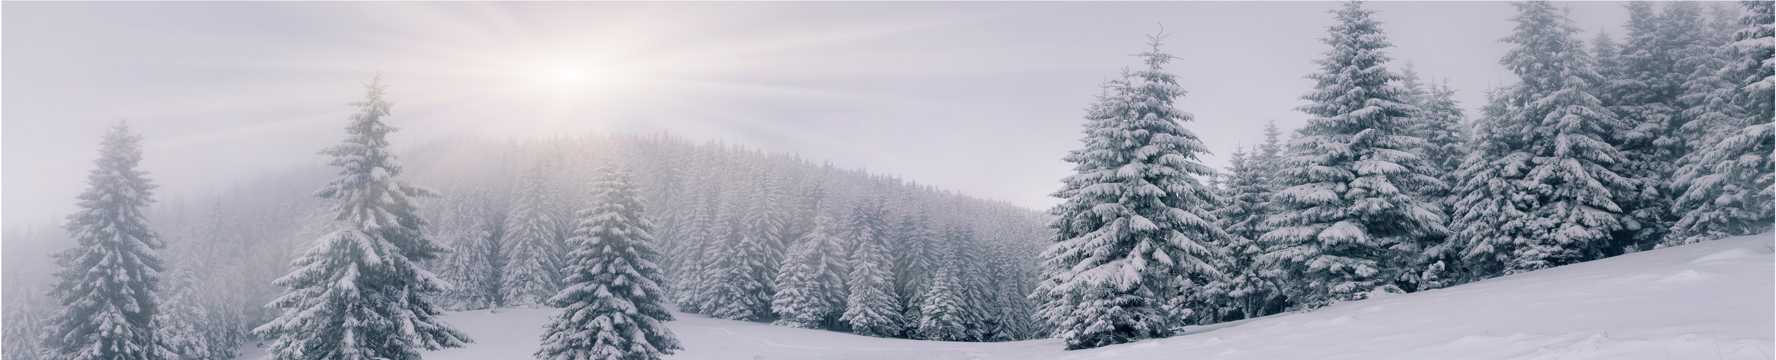 冬日雪地景色图片